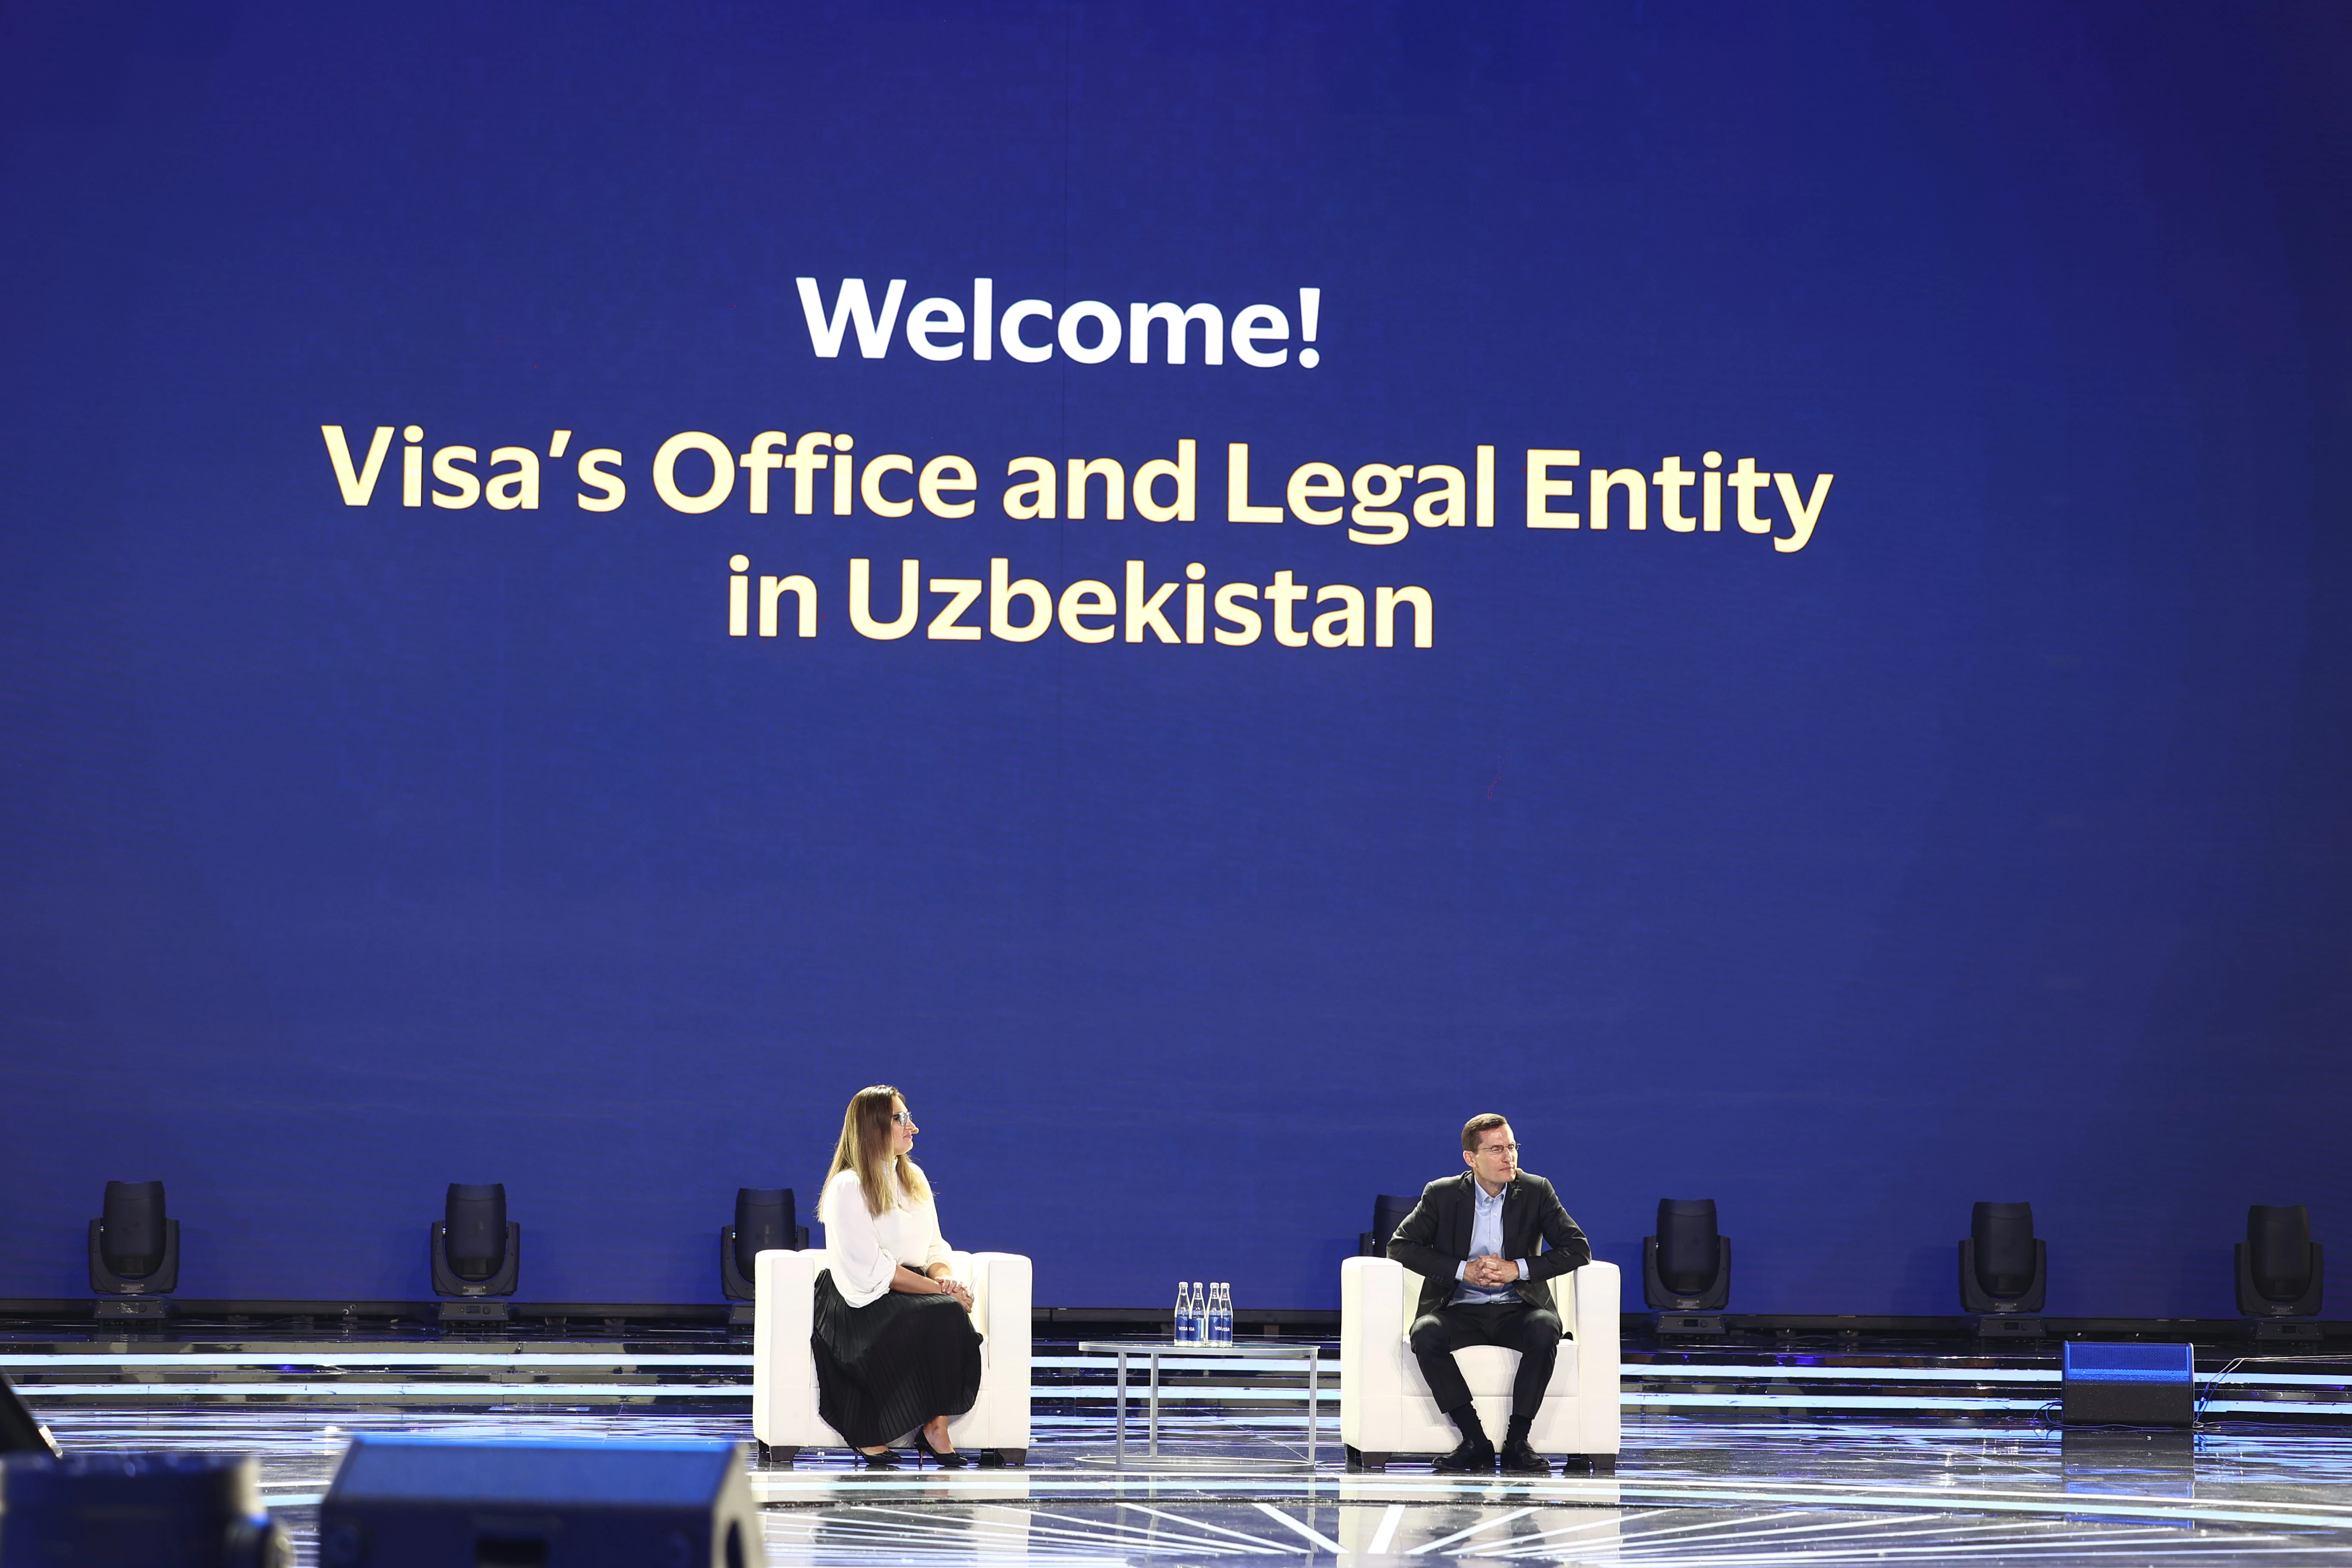 Visa отмечает 30-летие инноваций в Центральной Азии и объявляет об открытии офиса в Узбекистане